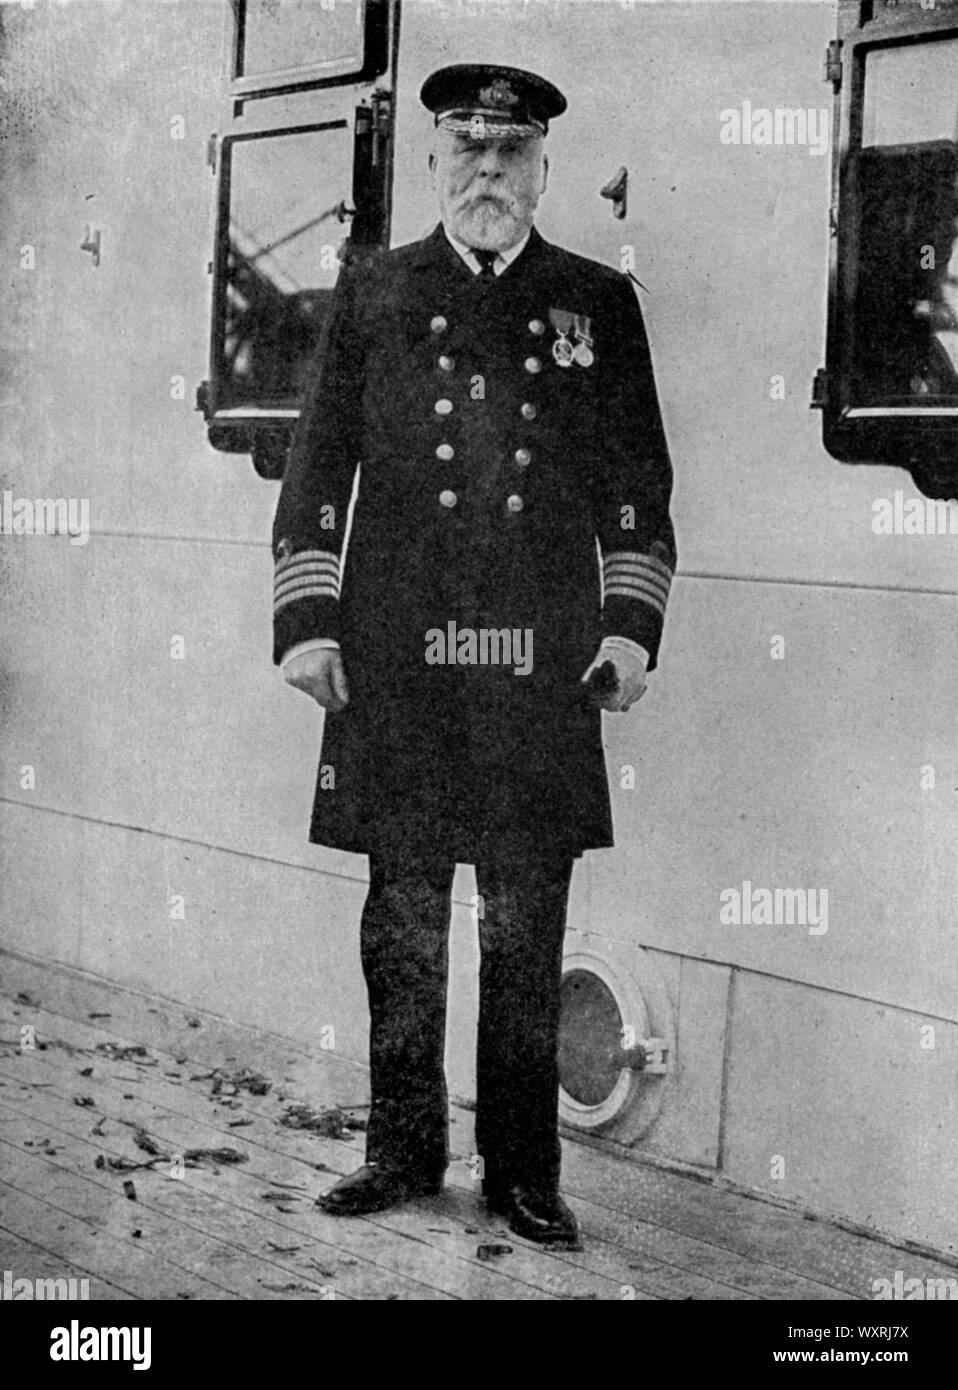 Rms titanic white star line fotografías e imágenes de alta resolución -  Alamy